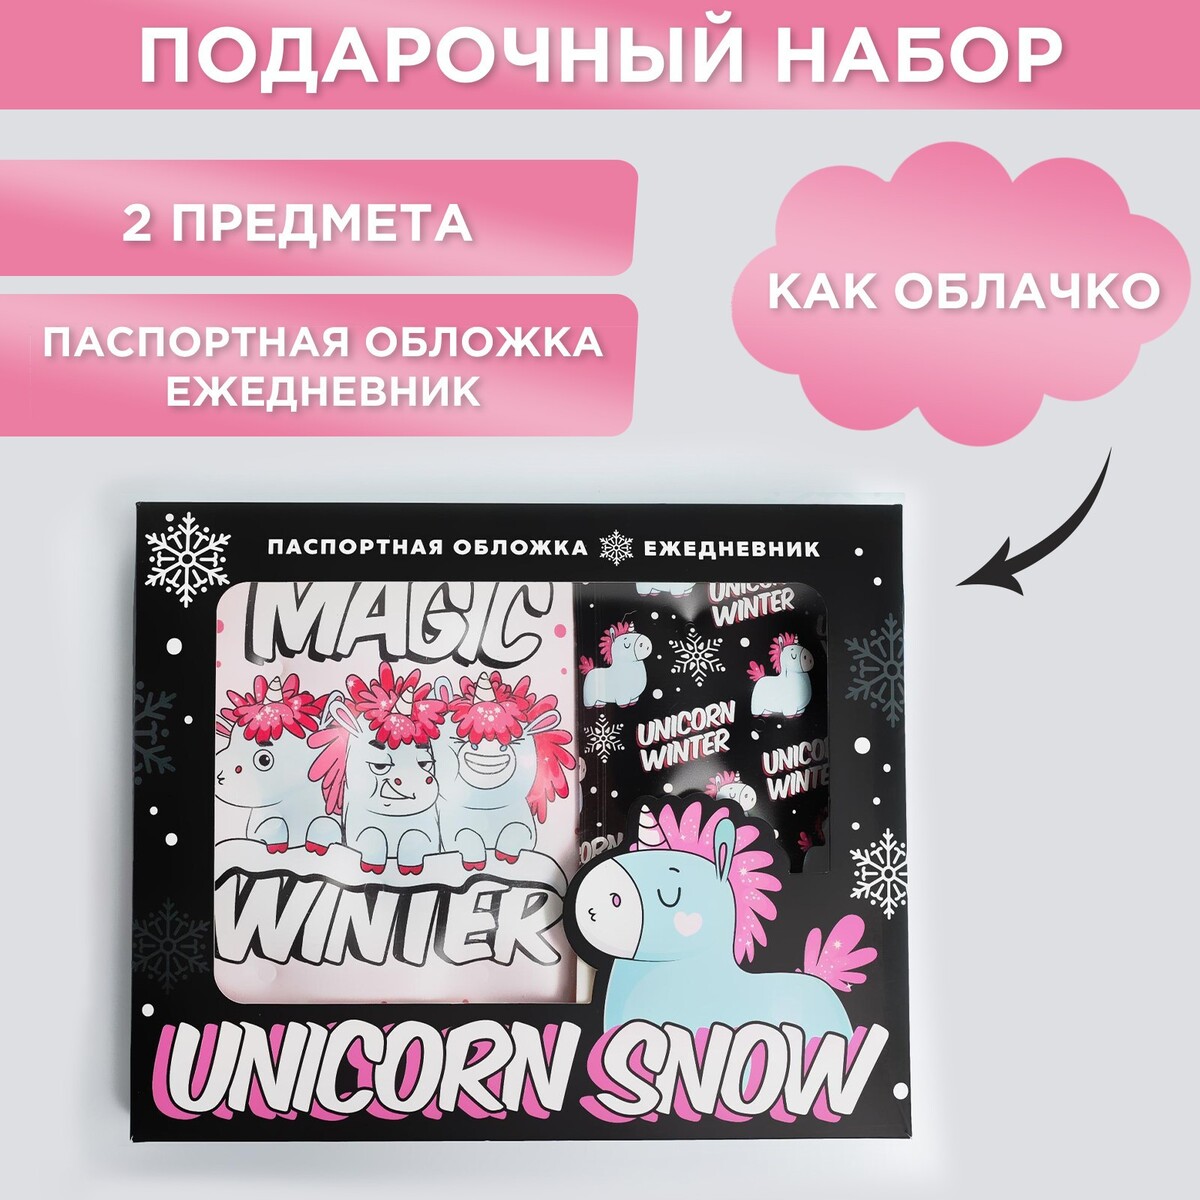 Набор unicorn snow: паспортная обложка-облачко и ежедневник-облачко набор коньки детские раздвижные snow cat с роликовой платформой защита р 30 33